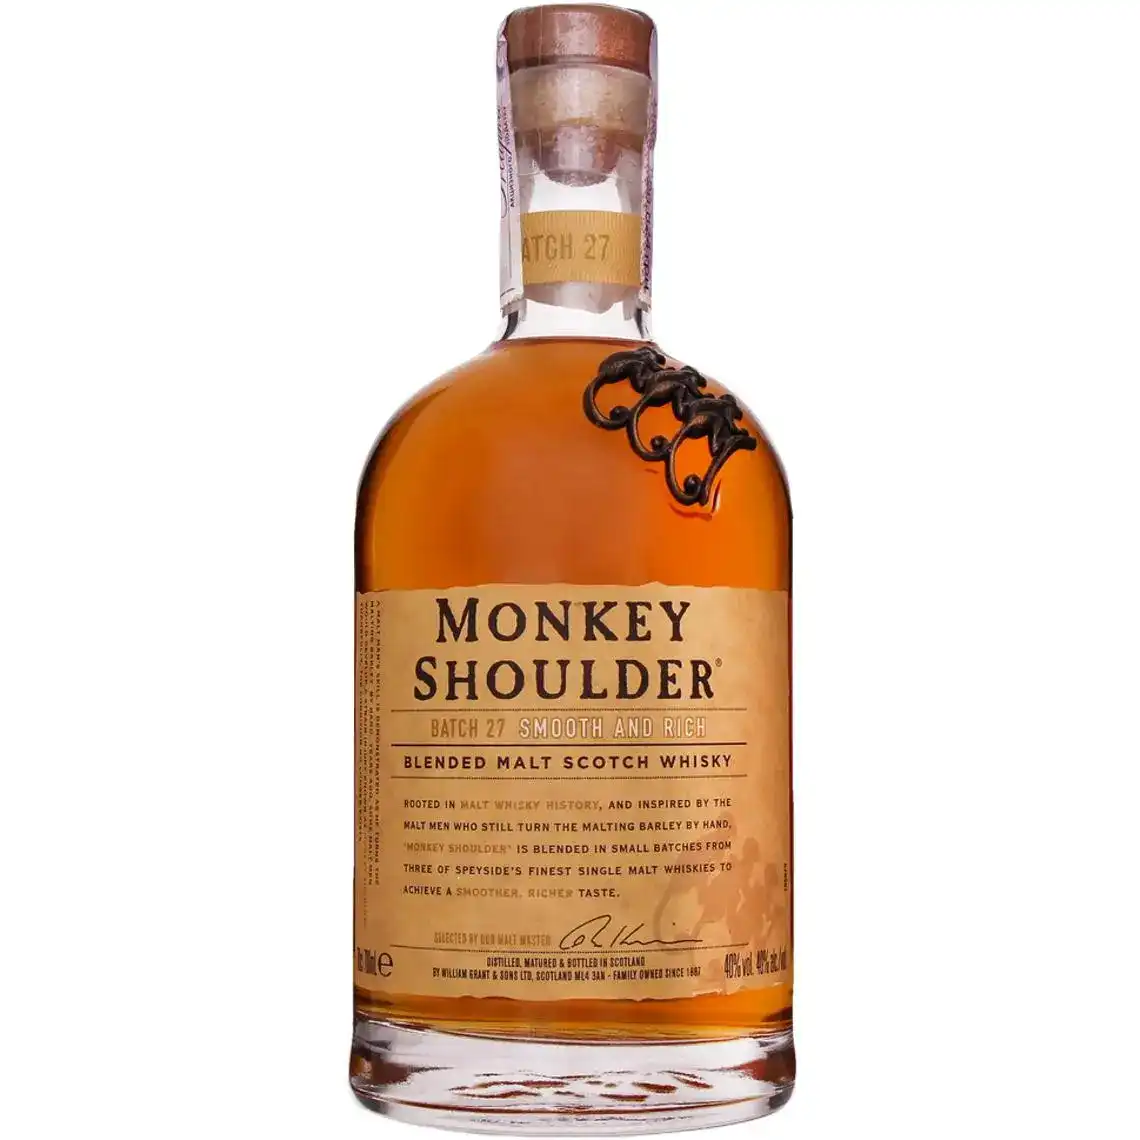 Віскі Monkey Shoulder купажований 40% 0.7 л